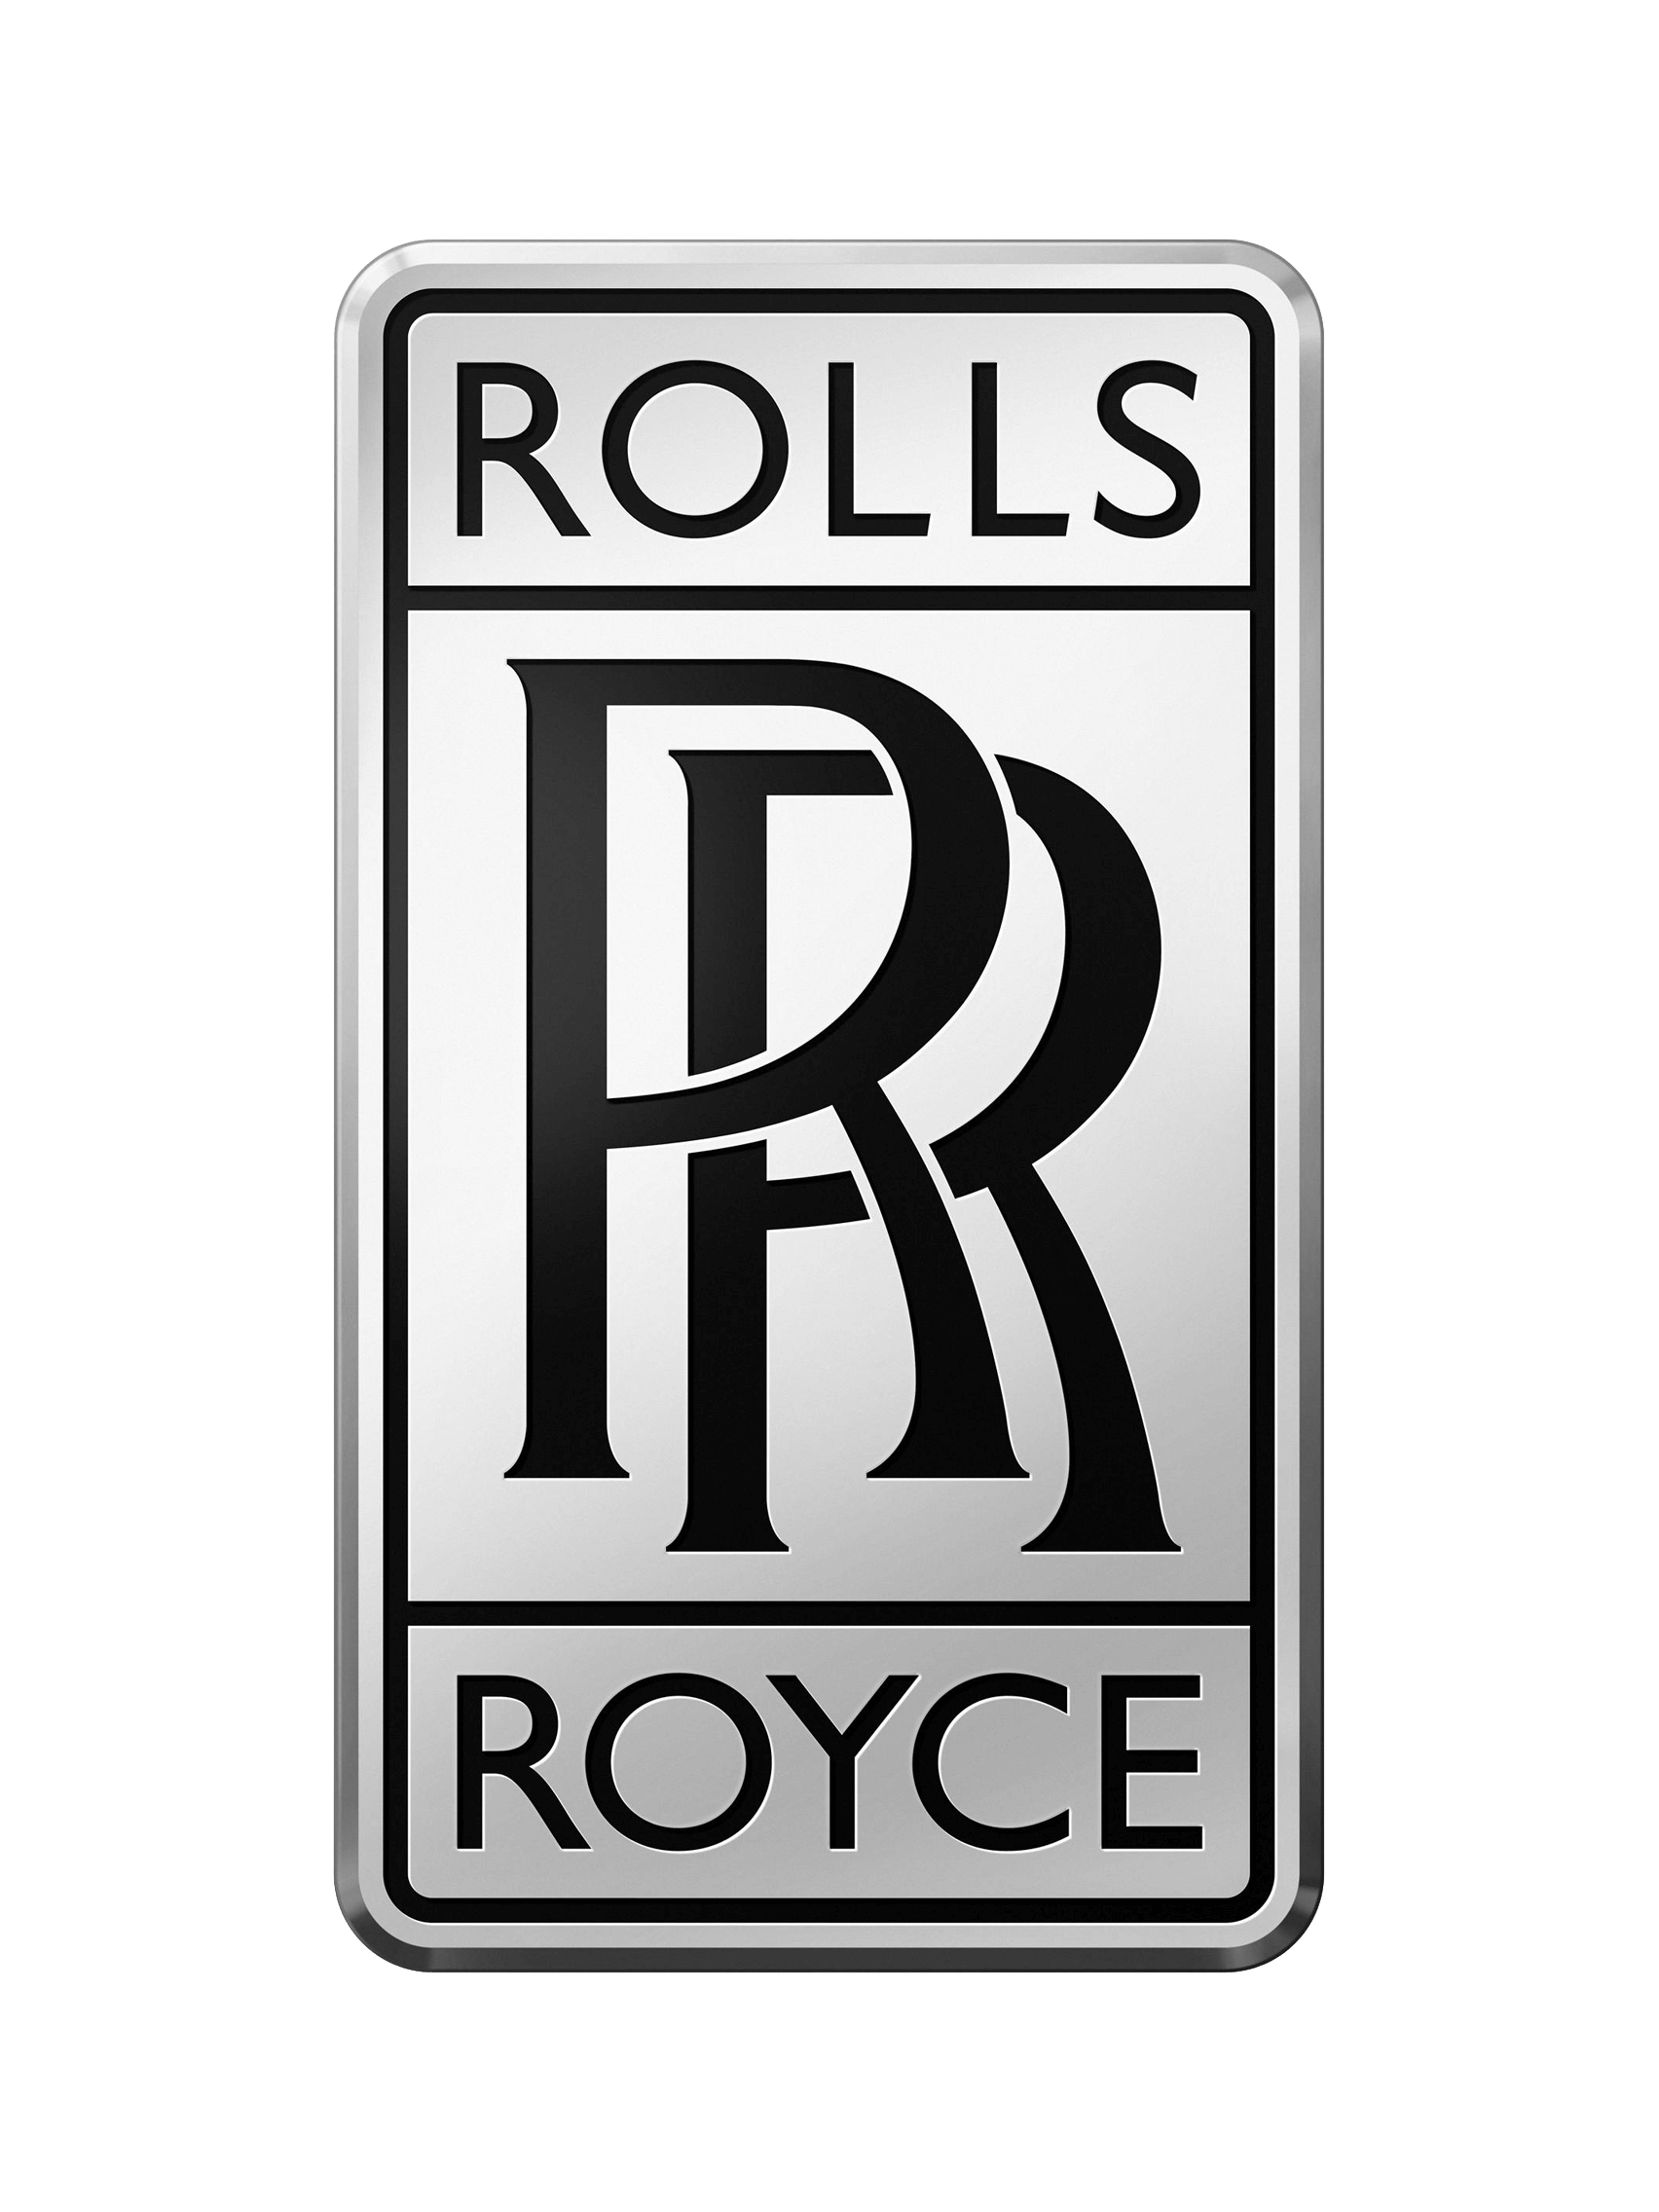 Rolls Royce - Derby Tiling Project